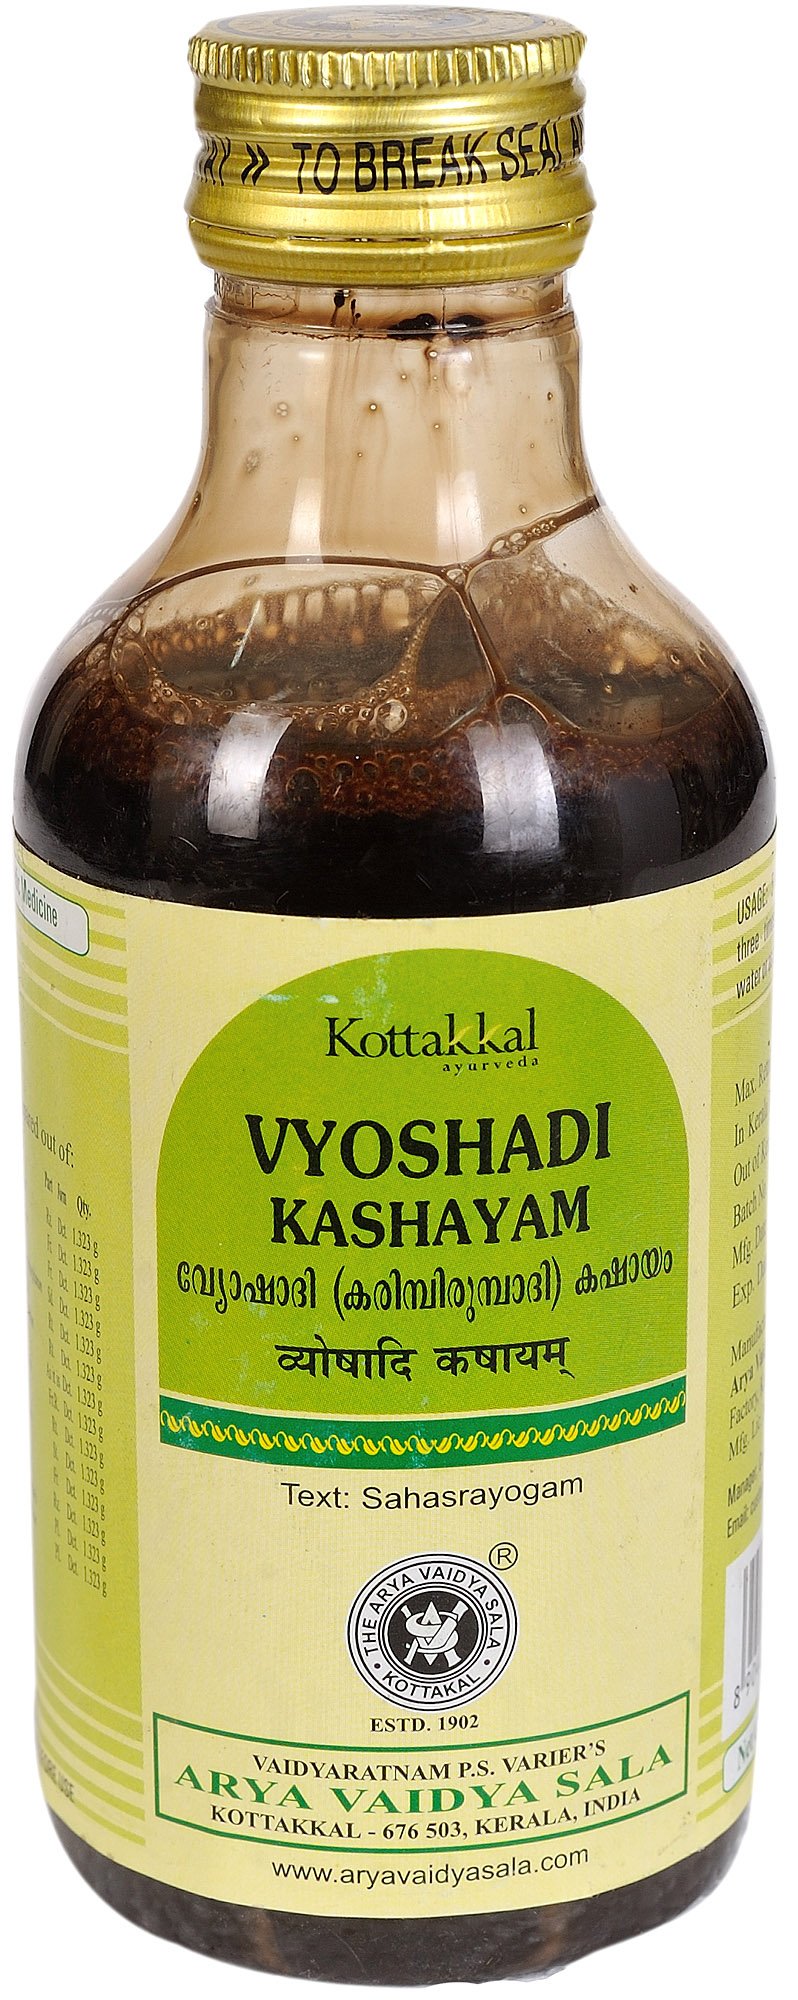 Vyoshadi Kashayam - book cover